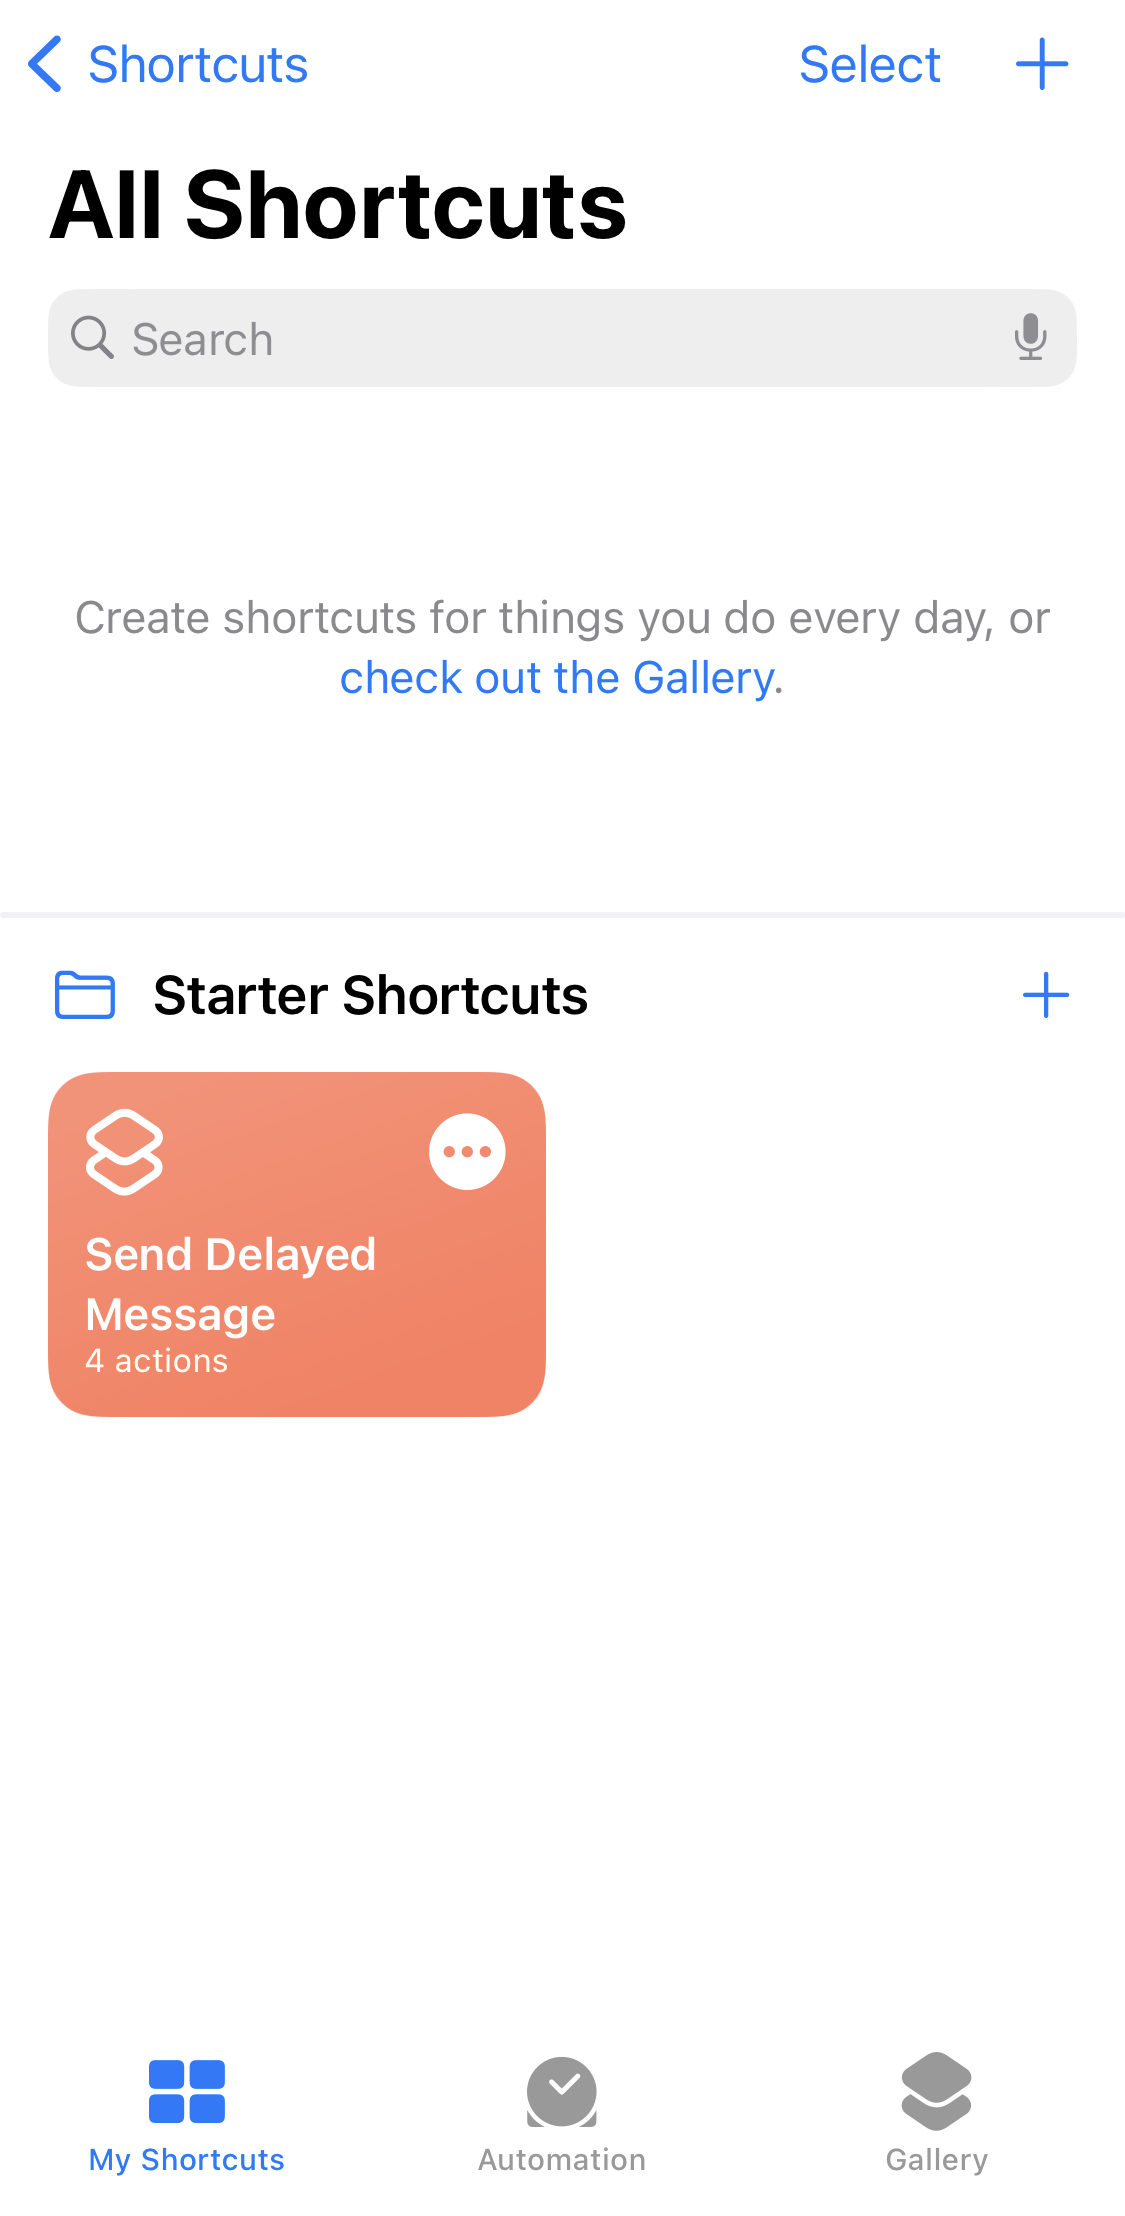 The shortcuts app